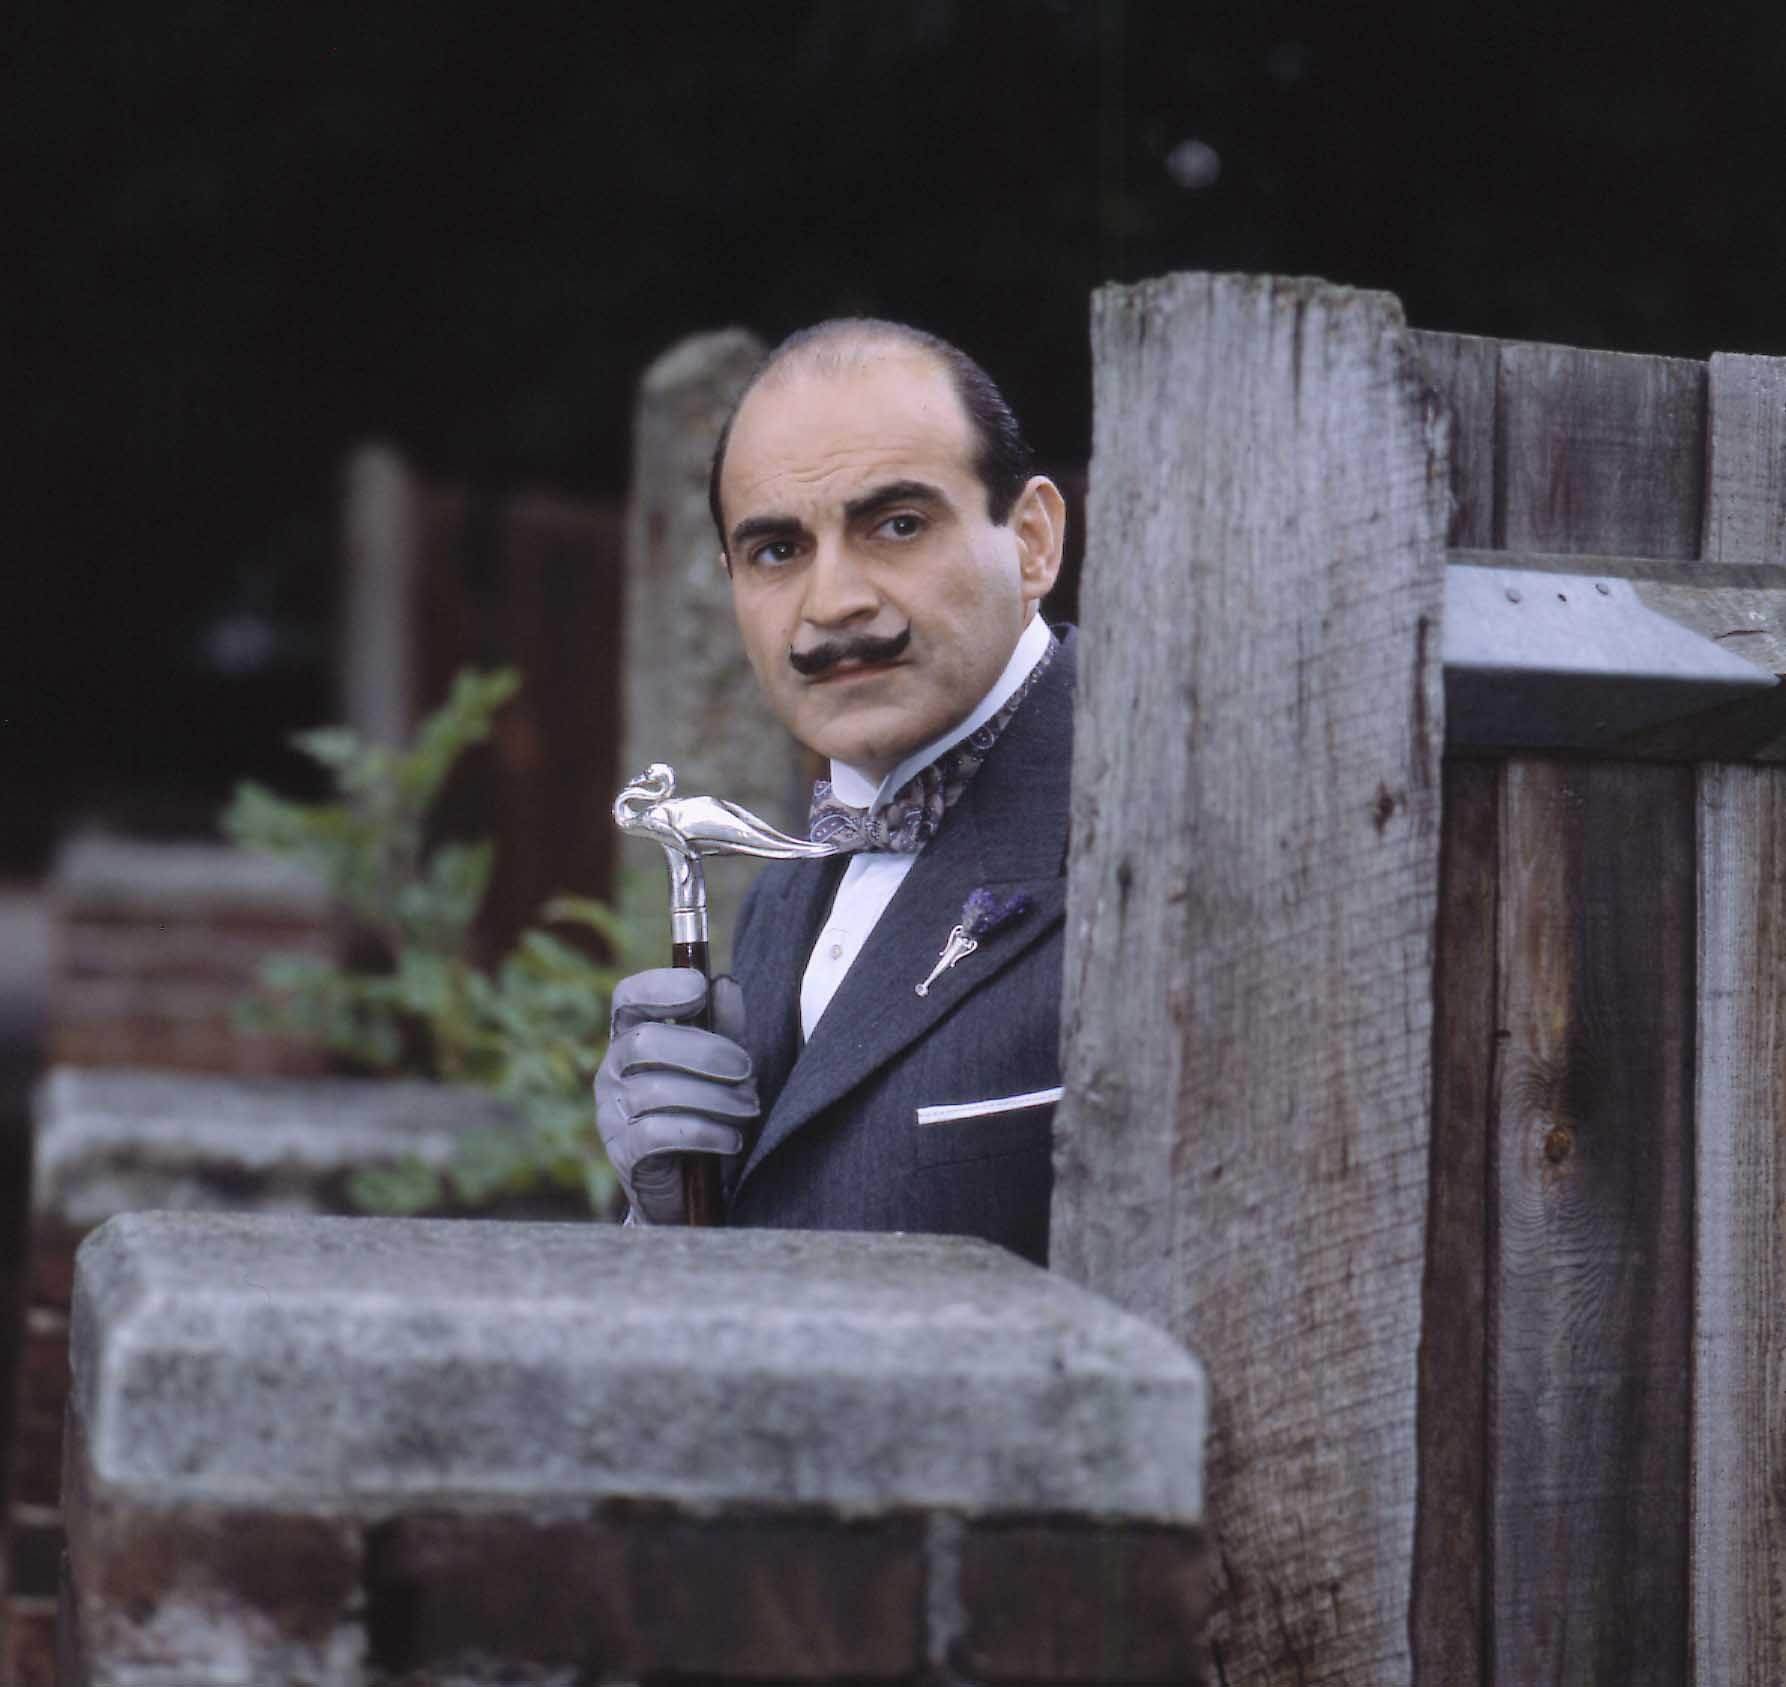 David Suchet as Hercule Poirot, holding a cane